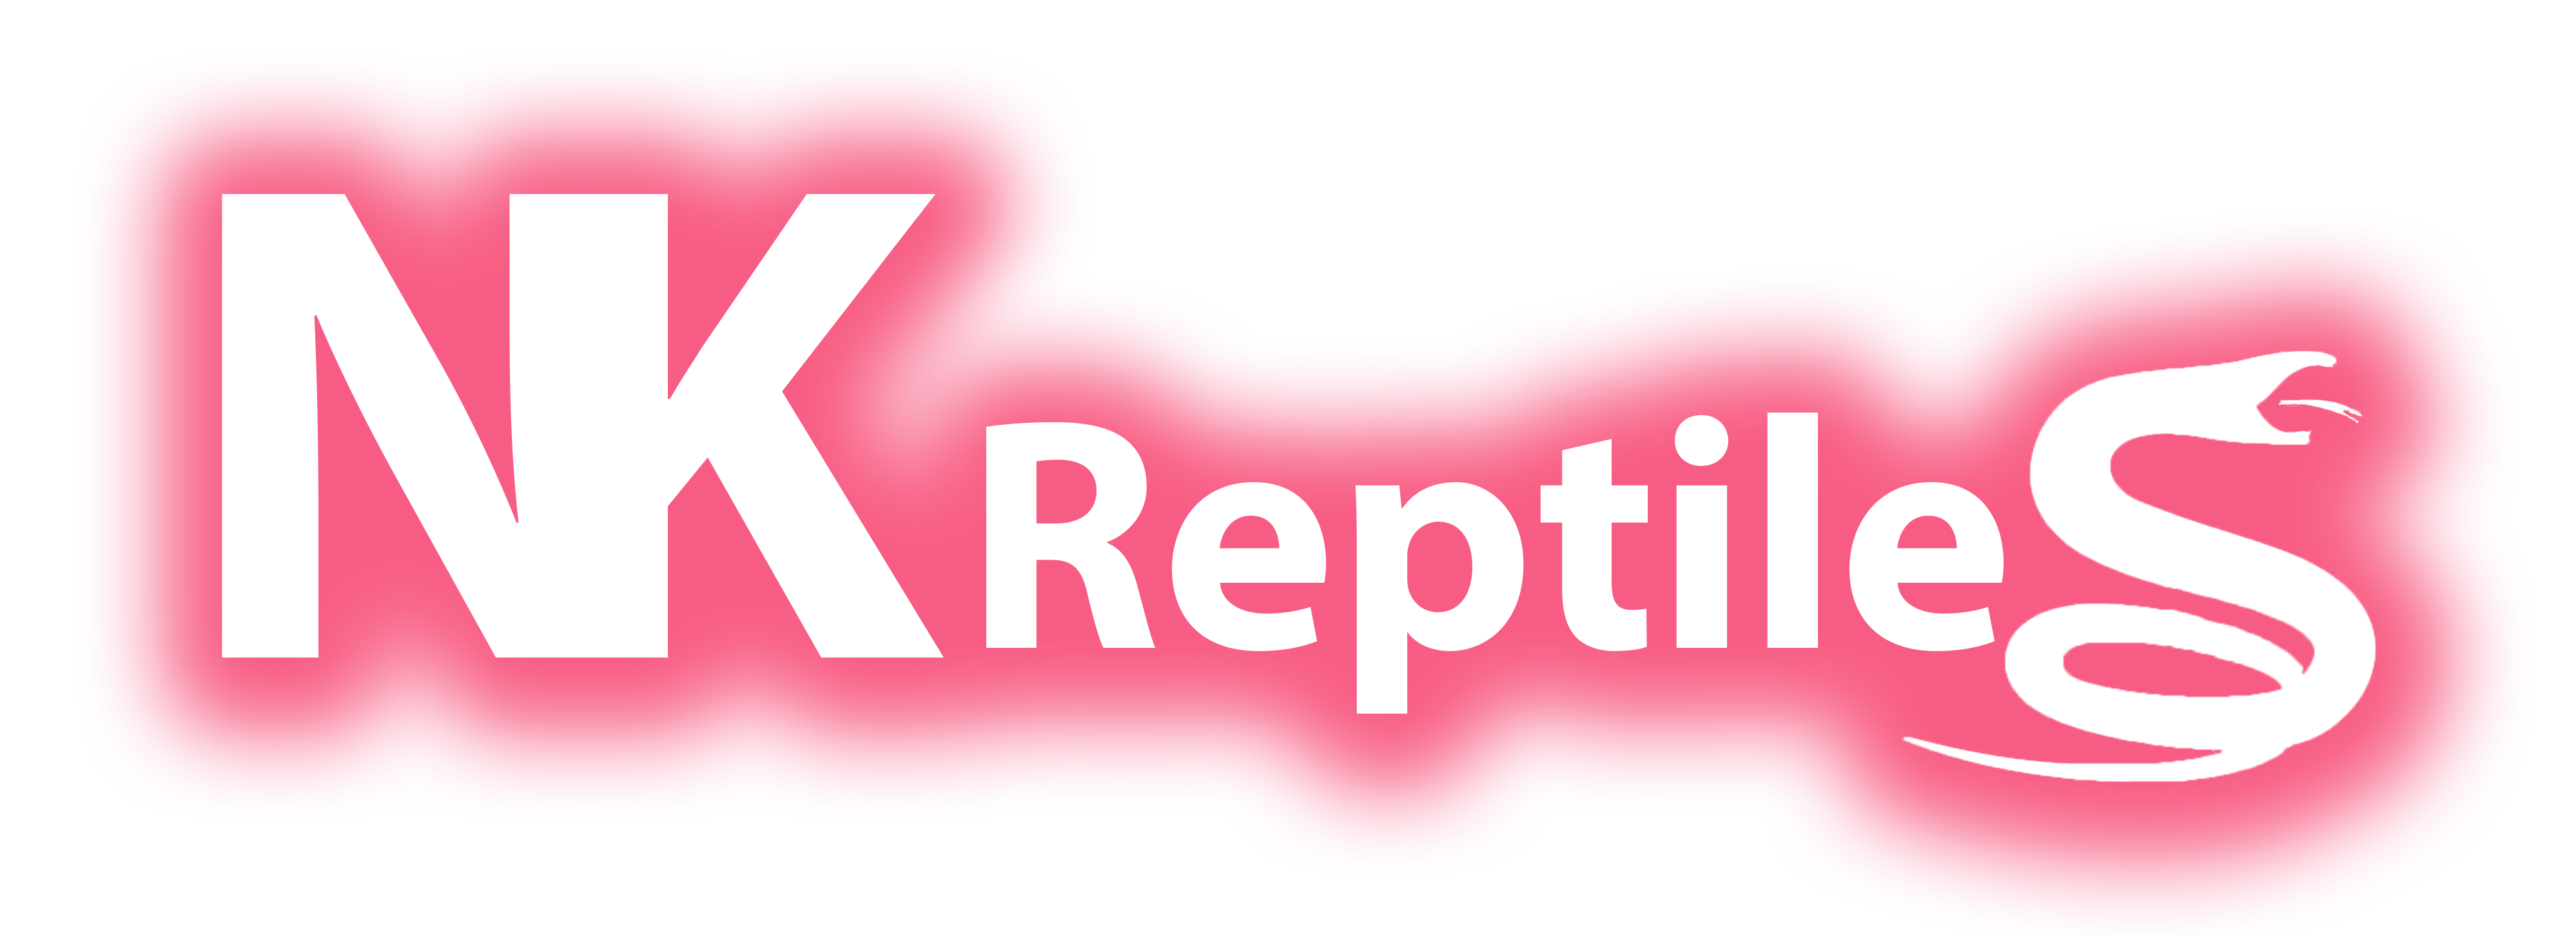 NK Reptiles